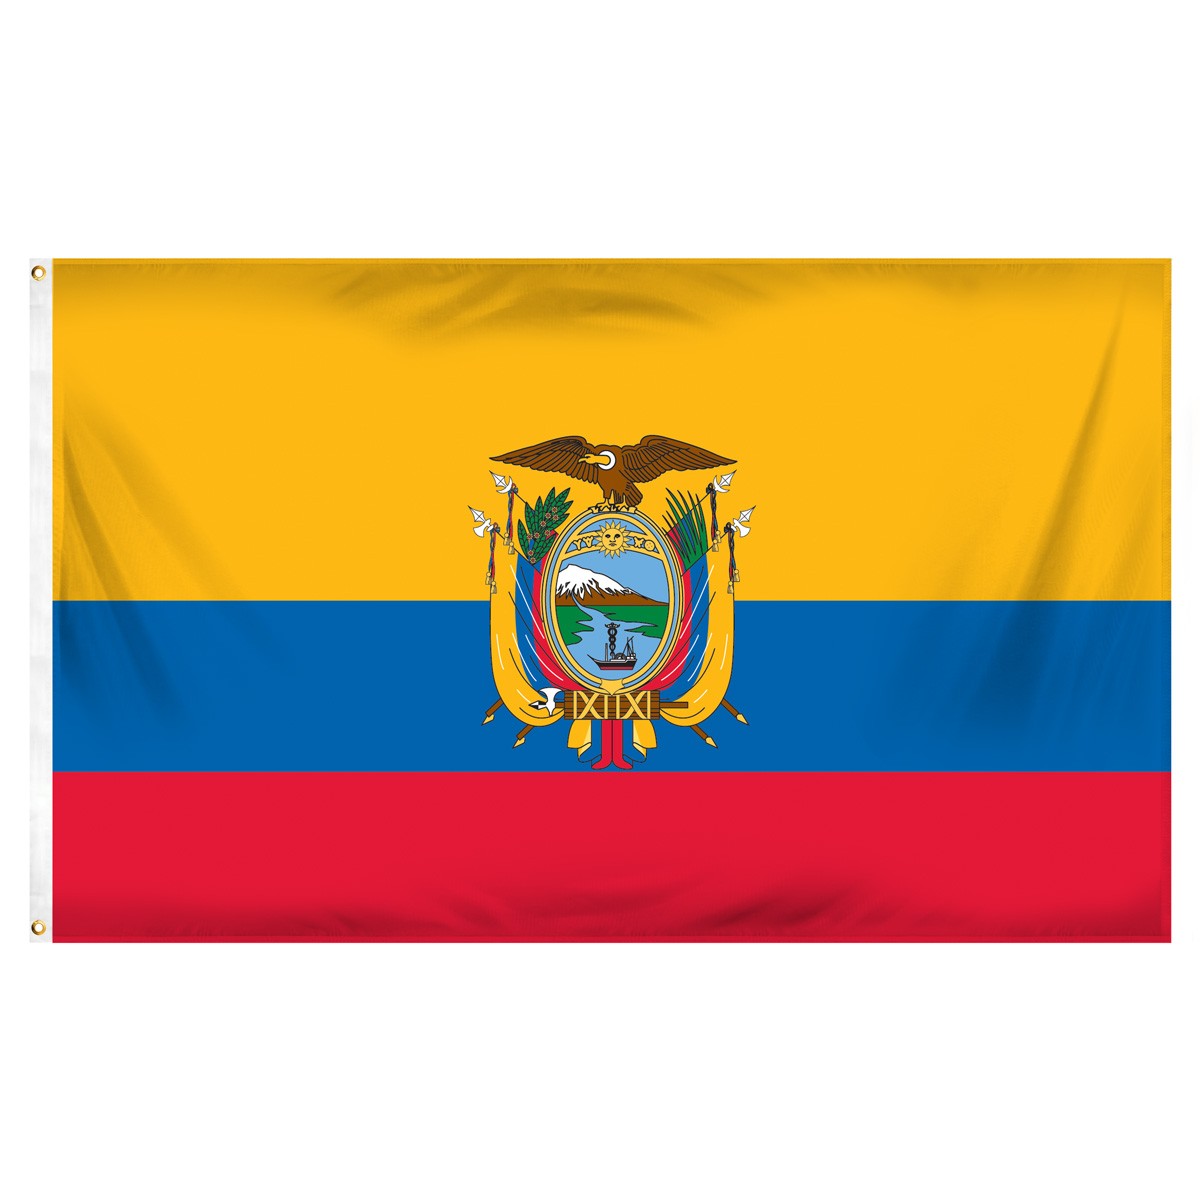 Ecuador Beach Flag and Sailing Flag